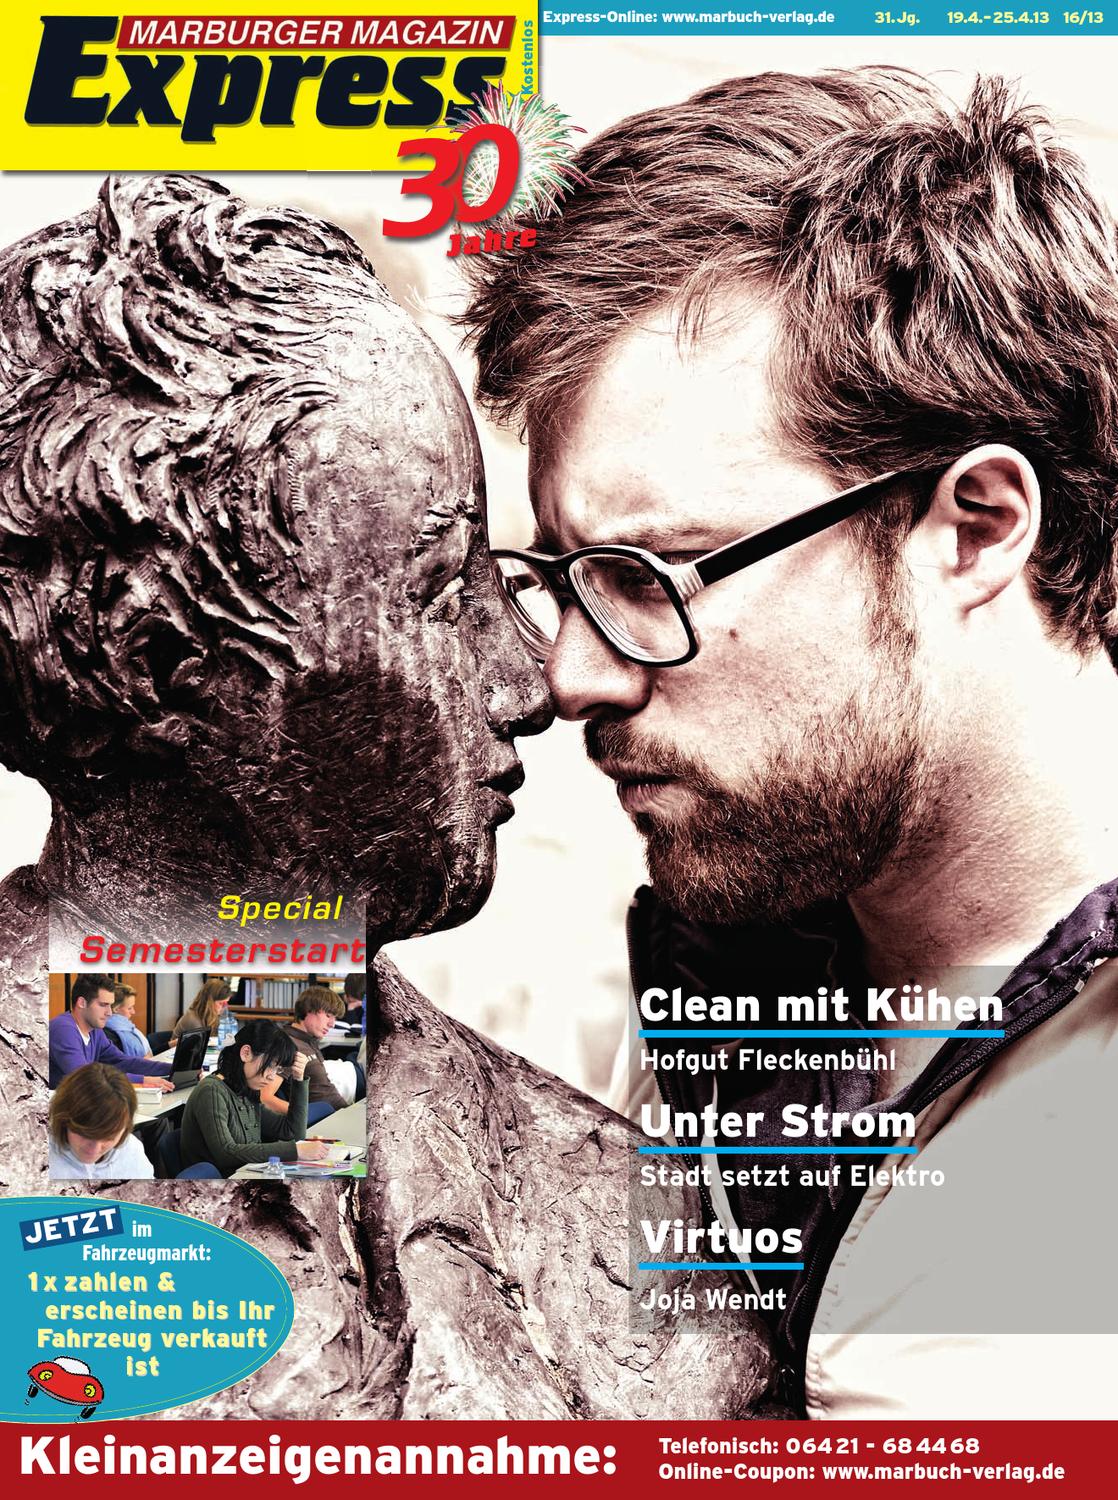 Schönes Aus Holz Selber Machen Neu Marburger Magazin Express 16 2013 by Ulrich butterweck issuu